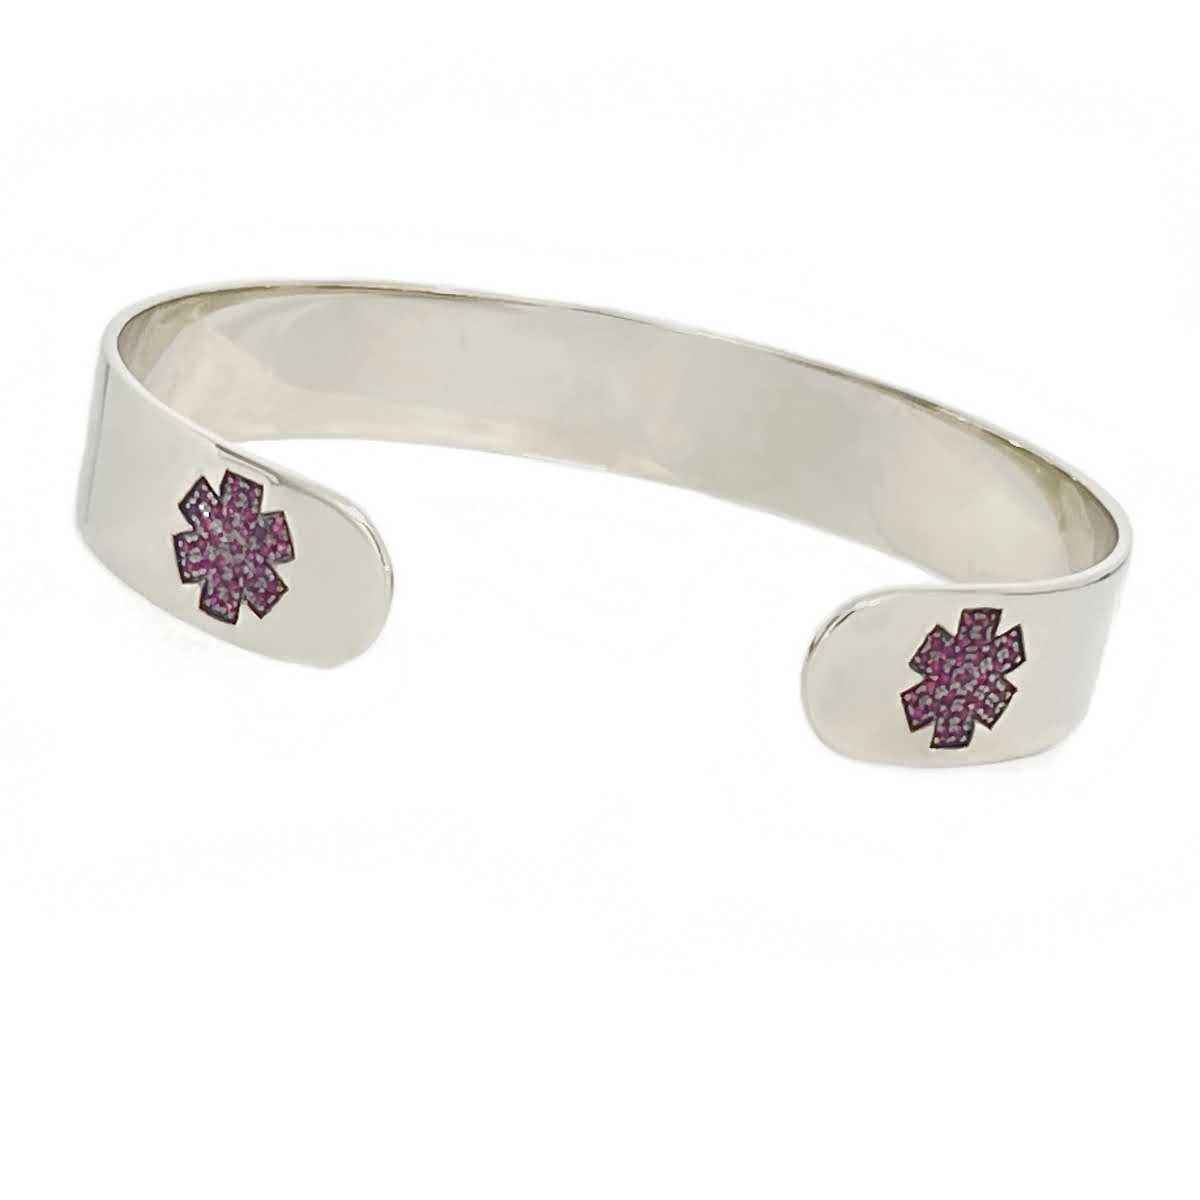 medic alert ID cuff bracelet for women | 14k white gold enamel | Charmed Medical Jewelry